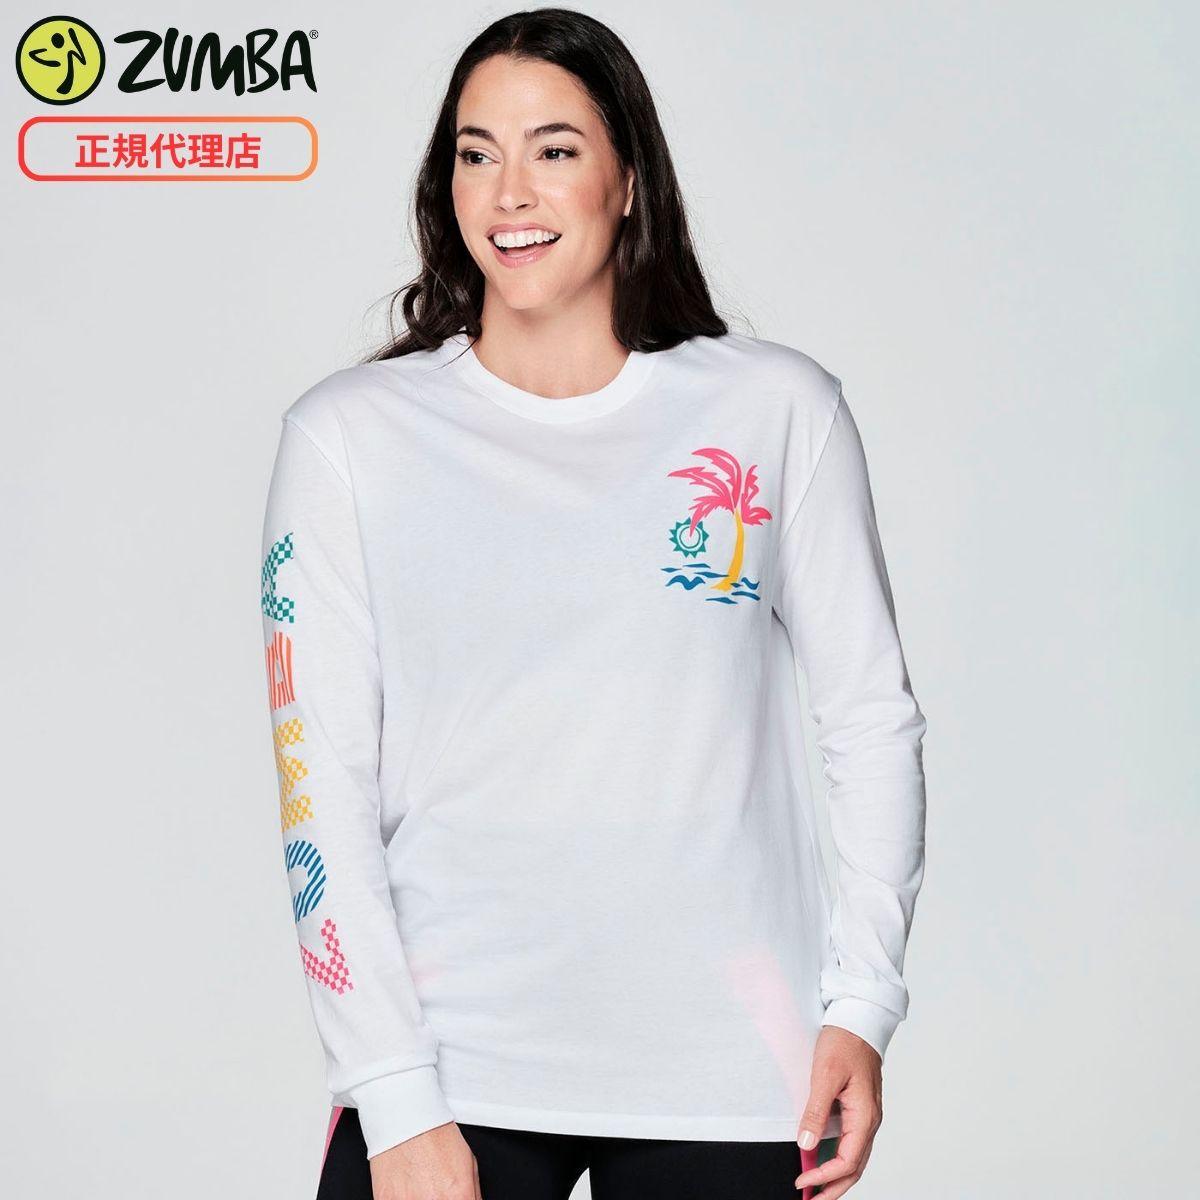 ZUMBA ズンバ 正規品 長袖Tシャツ WHITE XSサイズ Sサイズ Mサイズ